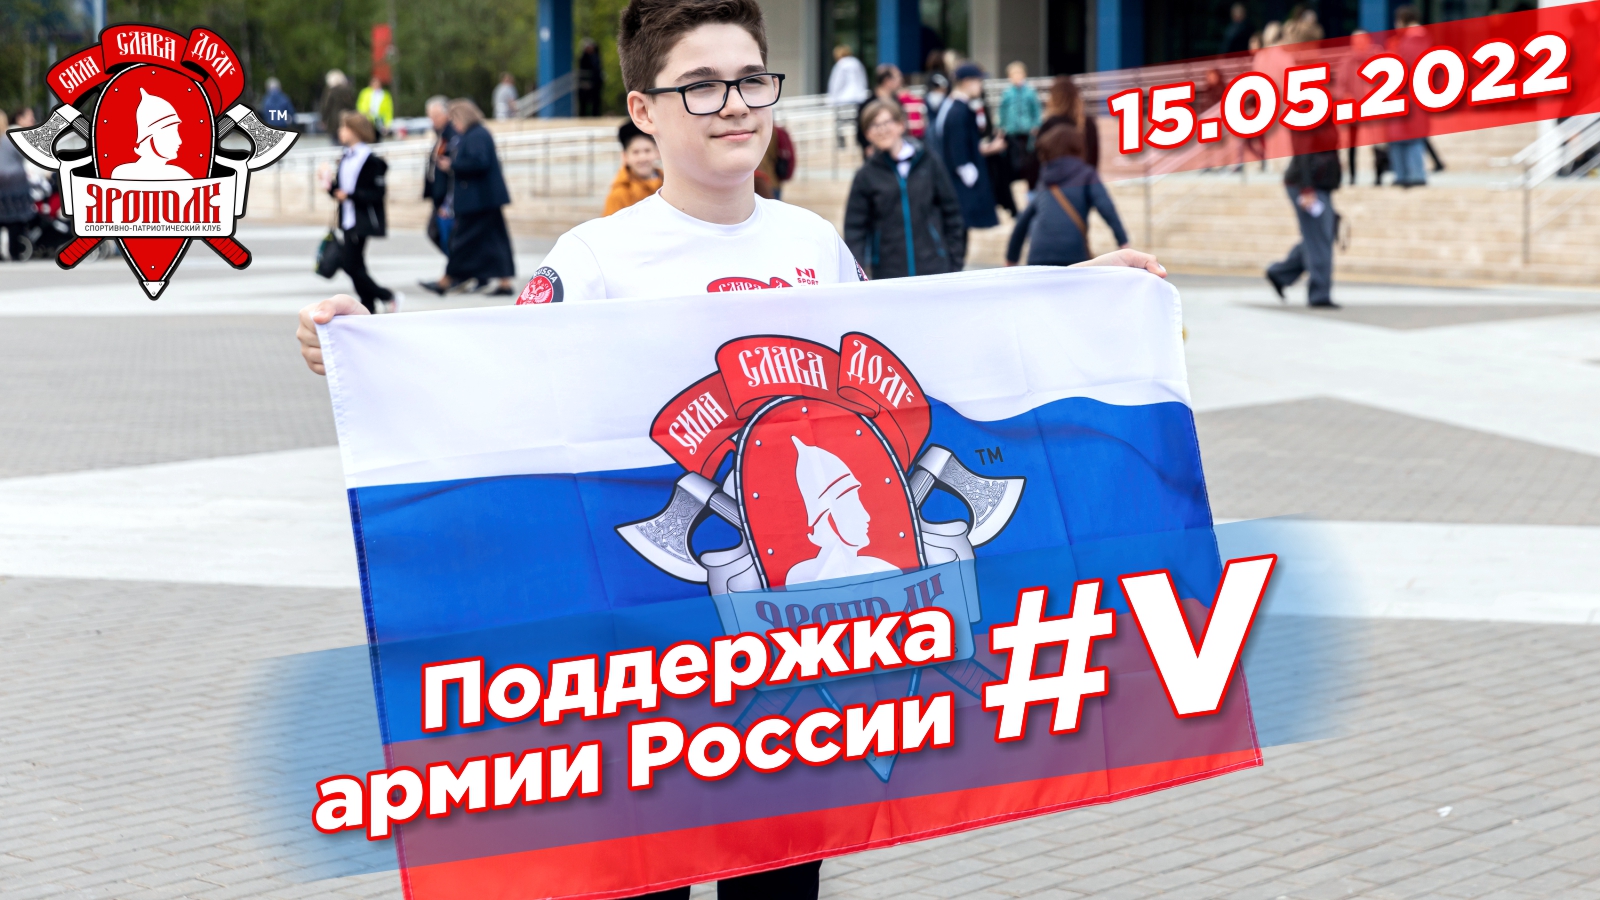 Поддержка клуба "ЯРОПОЛК" для Российской армии, Победа за нами,  #V,  15.05.2022